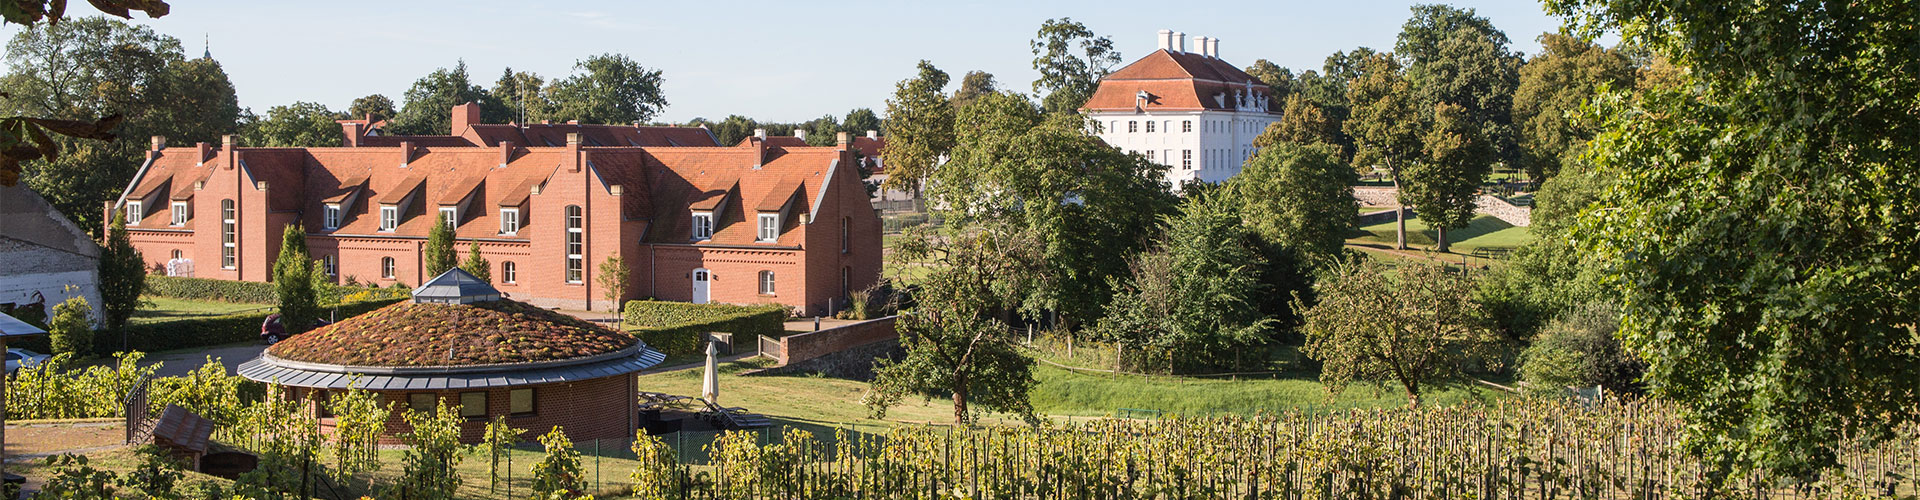 Blick auf Schlosswirt Meseberg